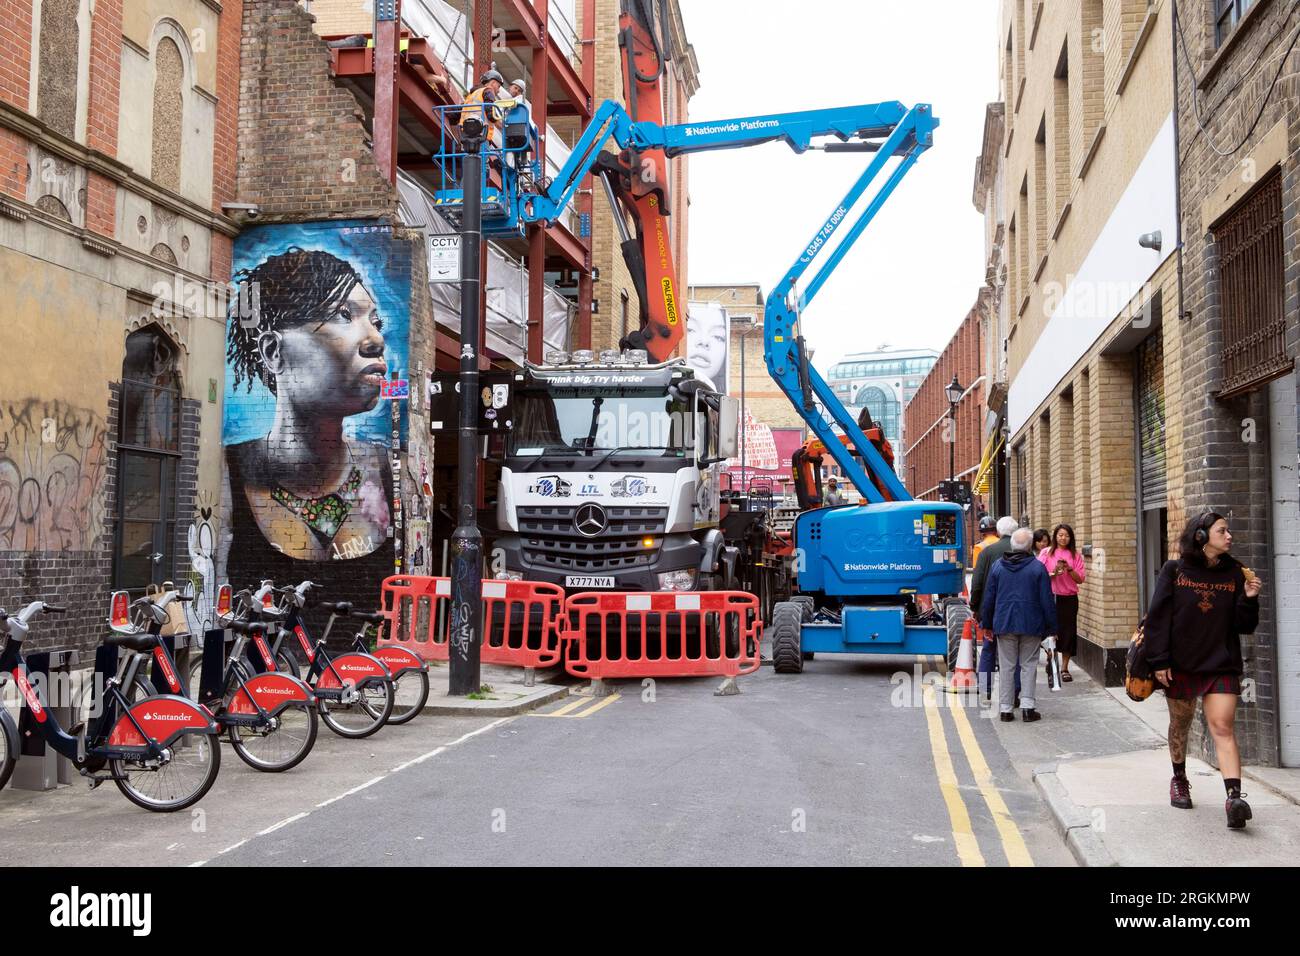 Route fermée bloquée par camion de construction avec grue et cerise picker véhicules murale femme noire Spitalfields East London E1 Angleterre KATHY DEWITT Banque D'Images